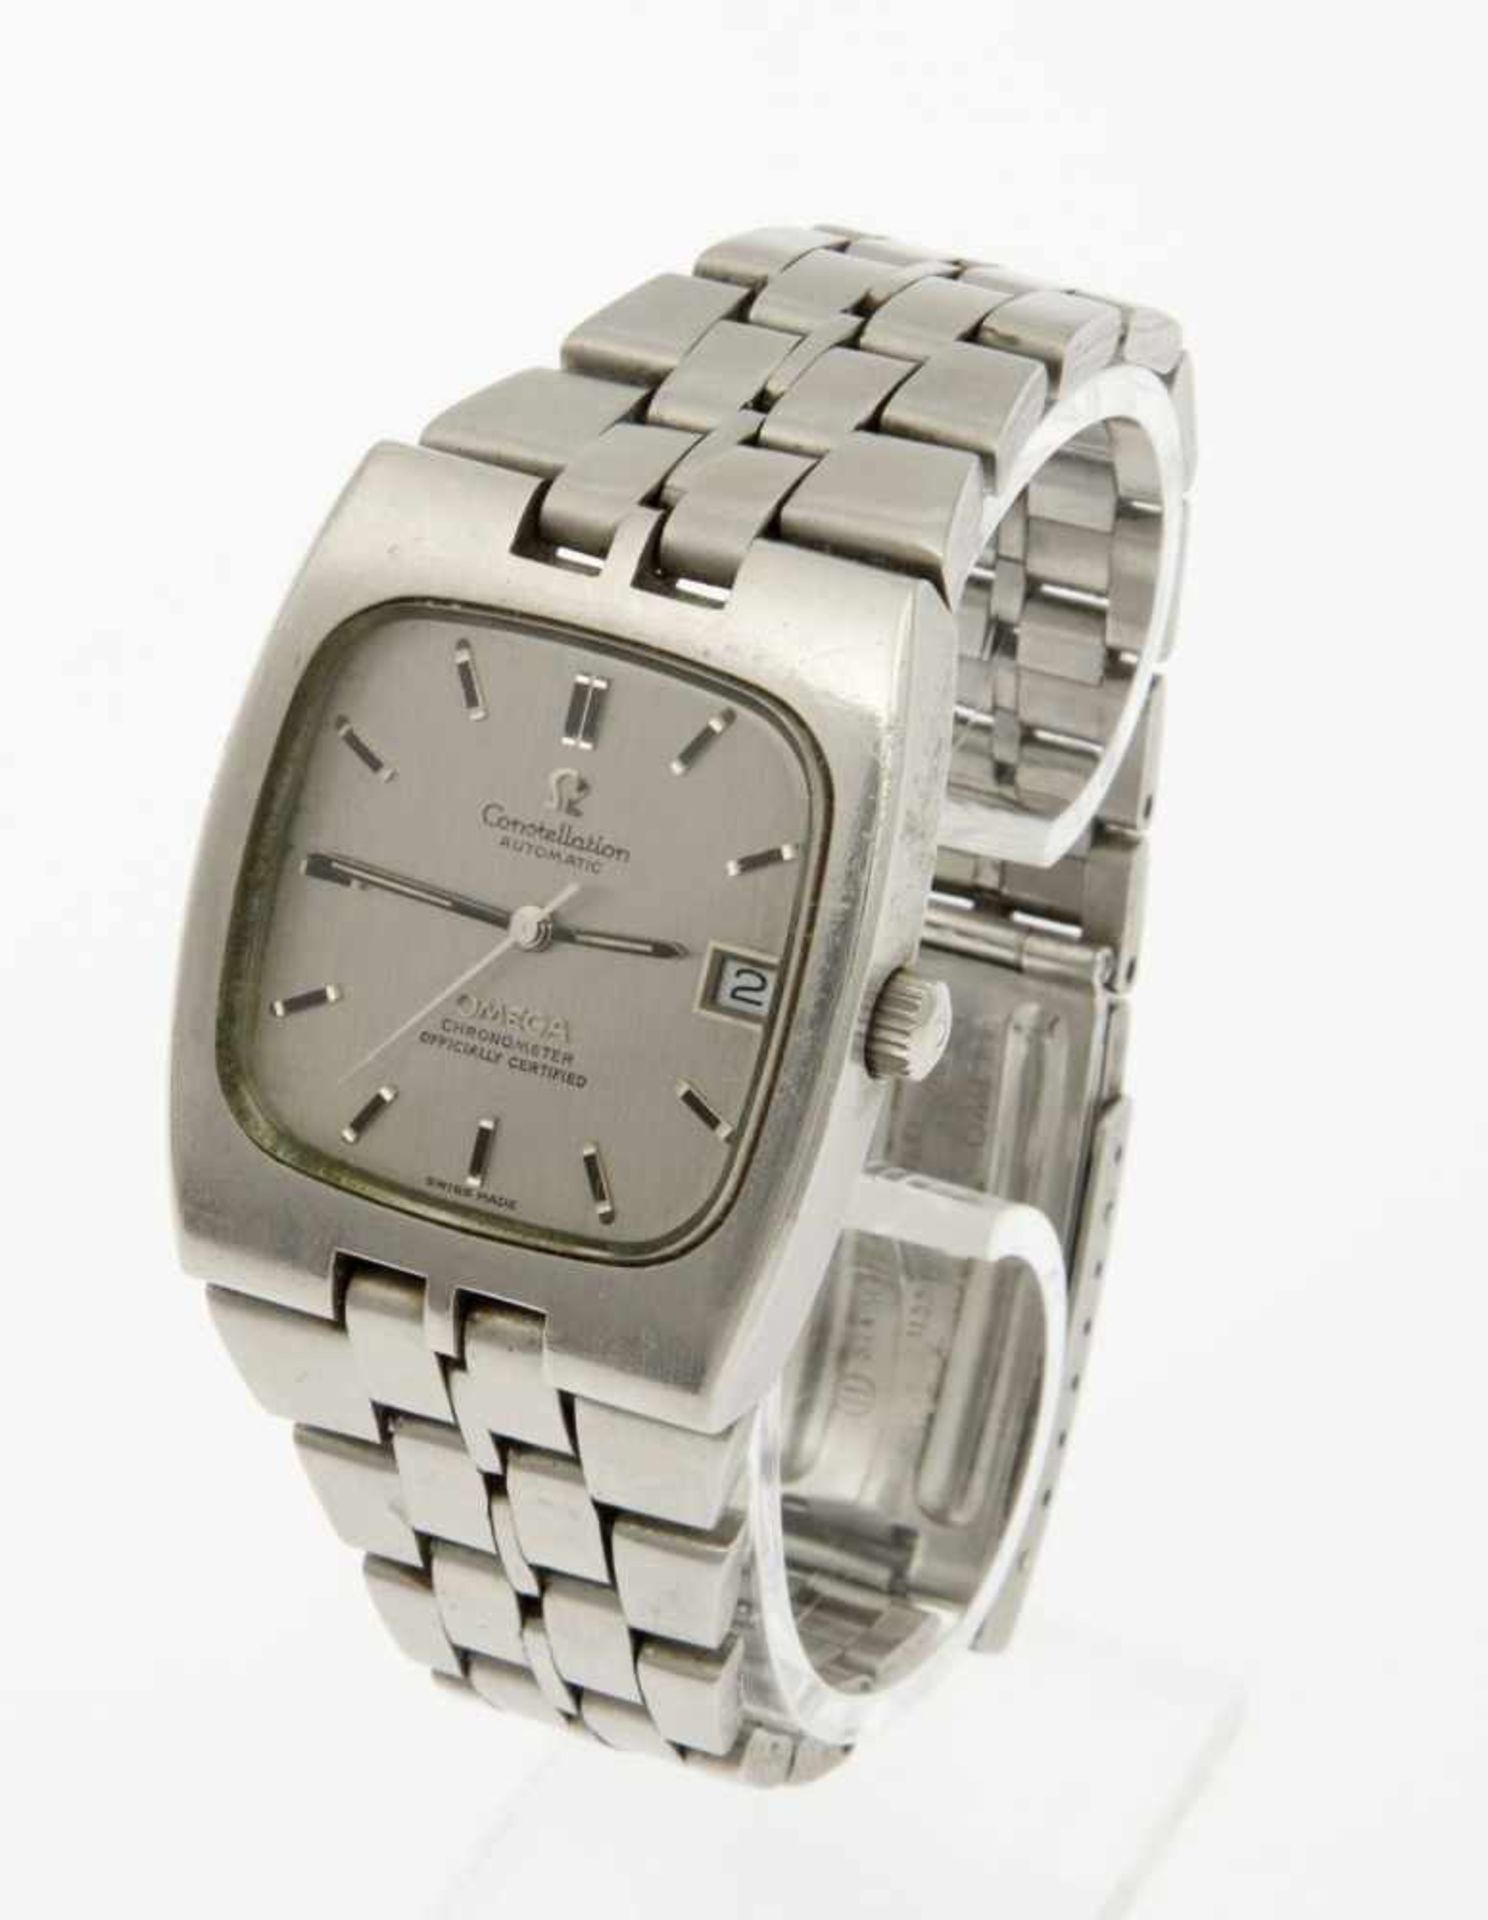 Automatische Omega-Armbanduhr ConstellationGehäuse und Armband aus gebürstetem Stahl. Silberfarbenes